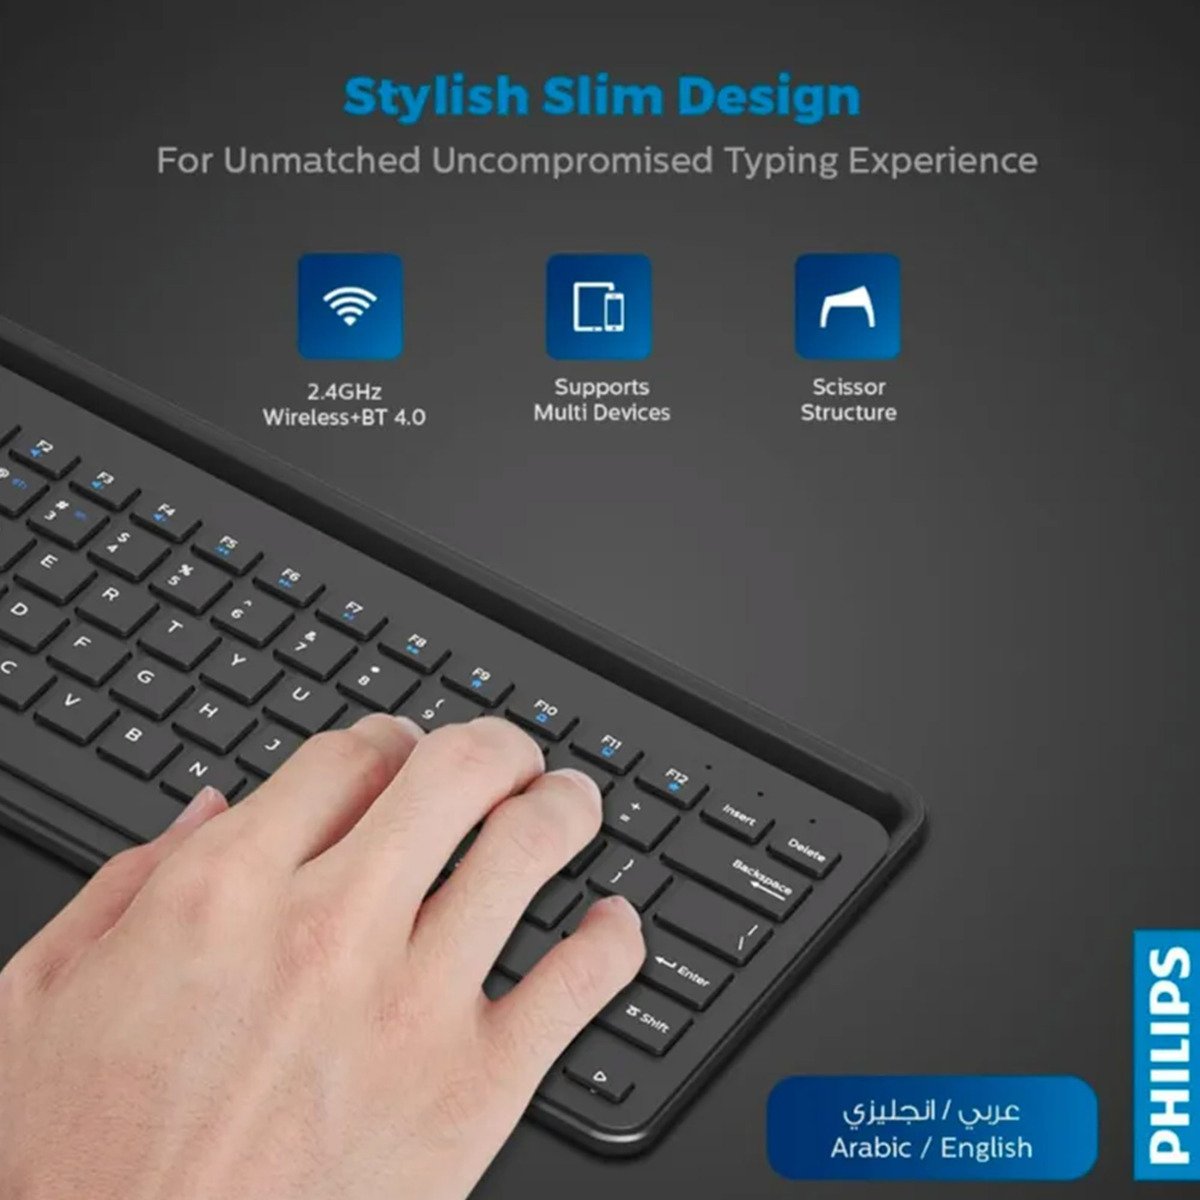 Philips Wireless Keyboard SPK6604